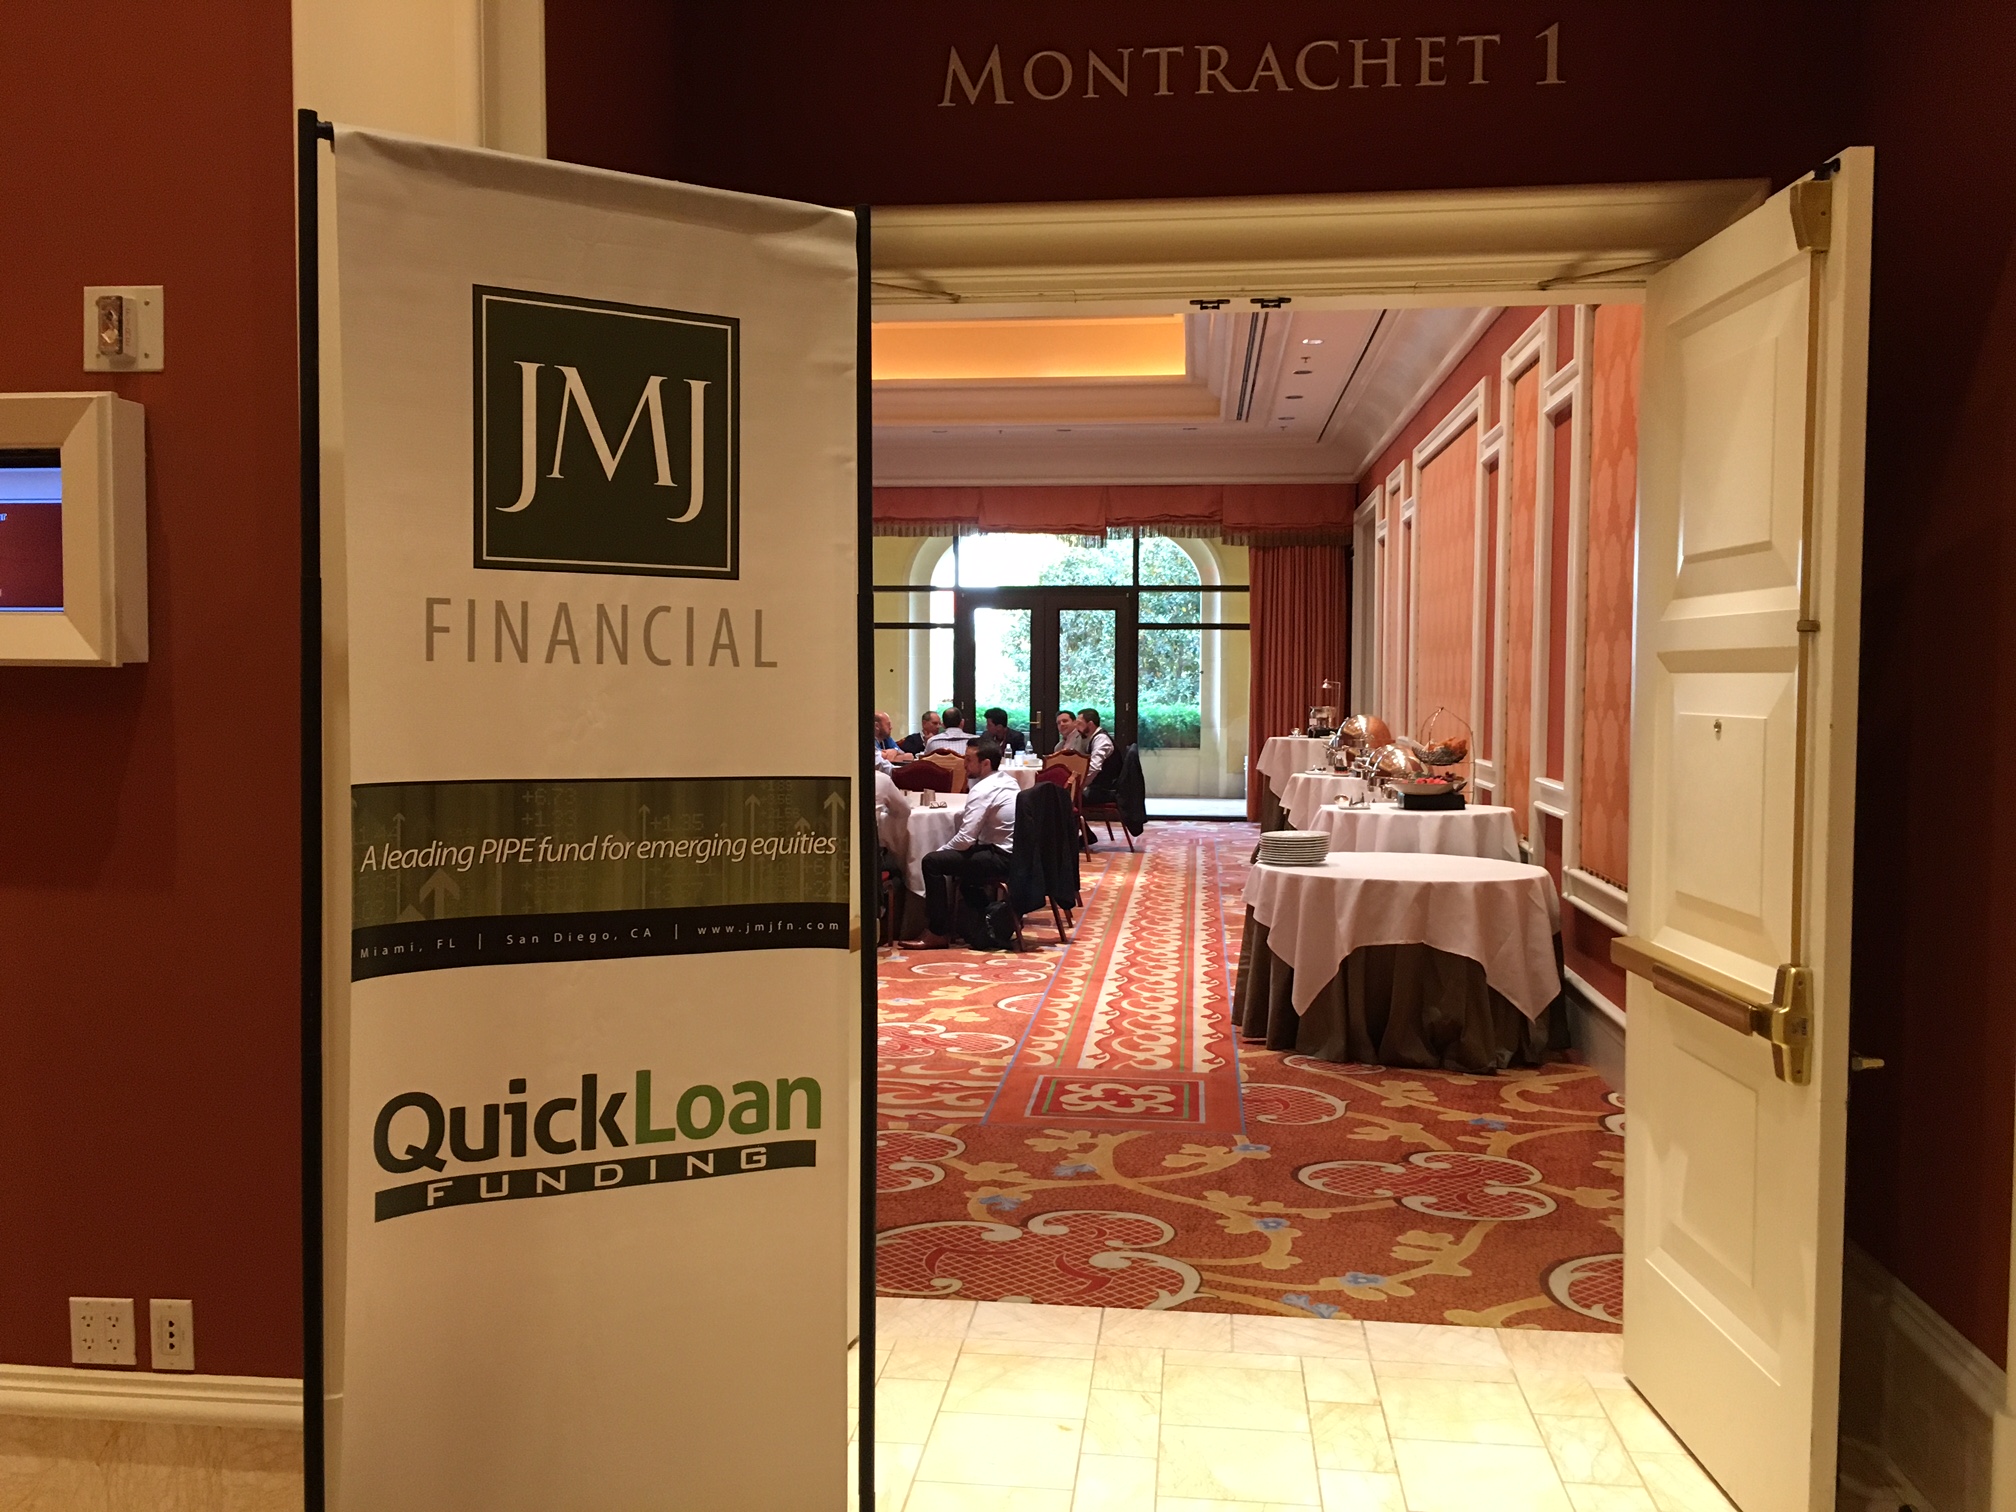 JMJ Financial Small Cap Summit, Wynn Las Vegas